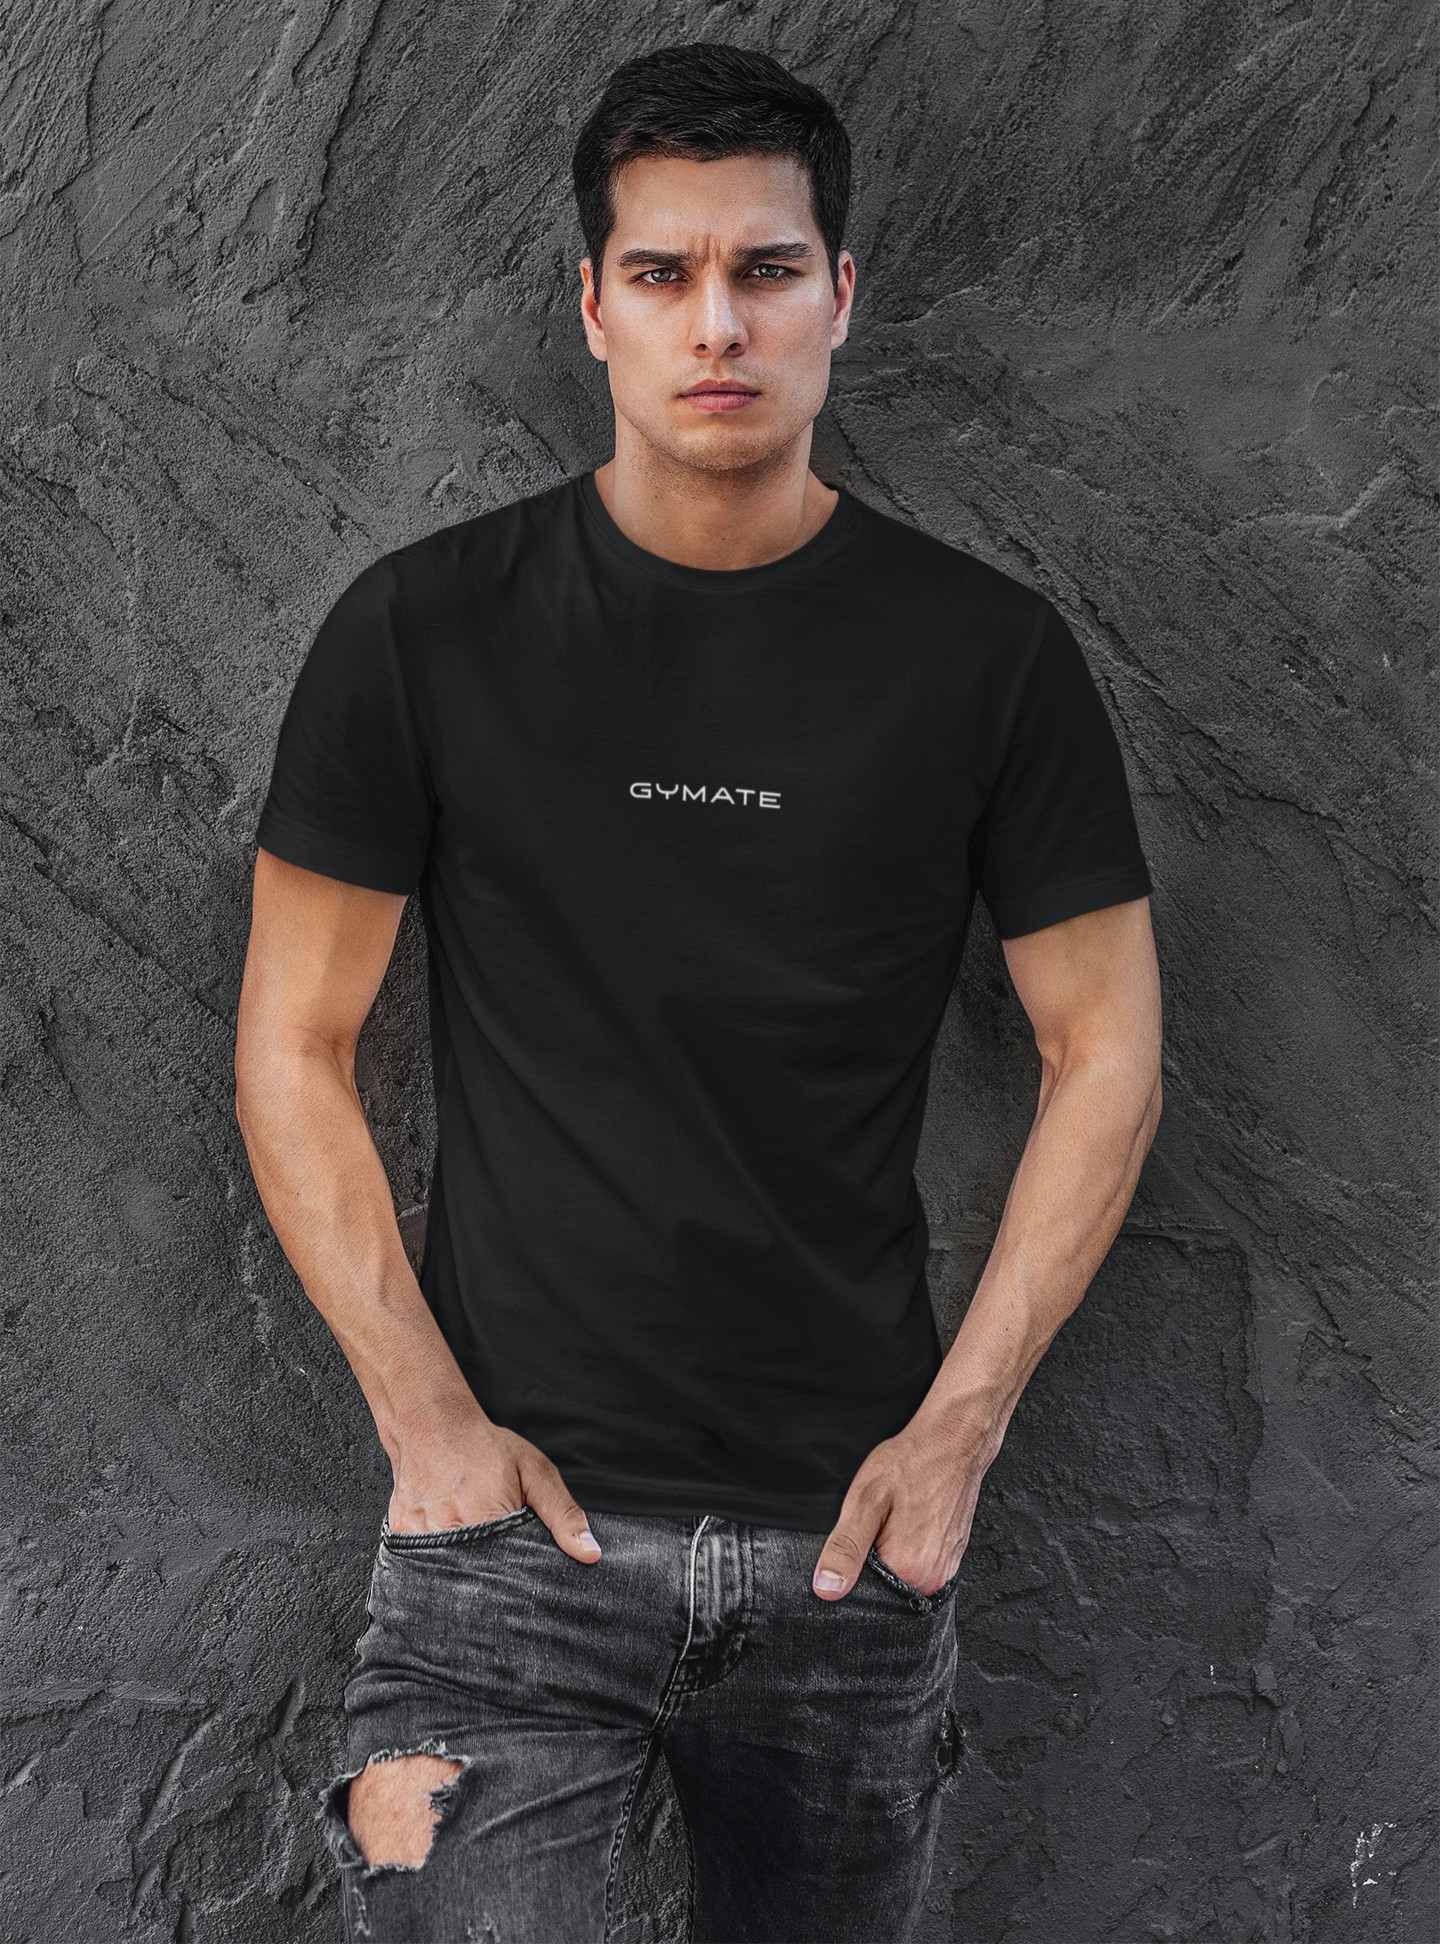 Designer mens T shirts Original Gymate sml/ctr black